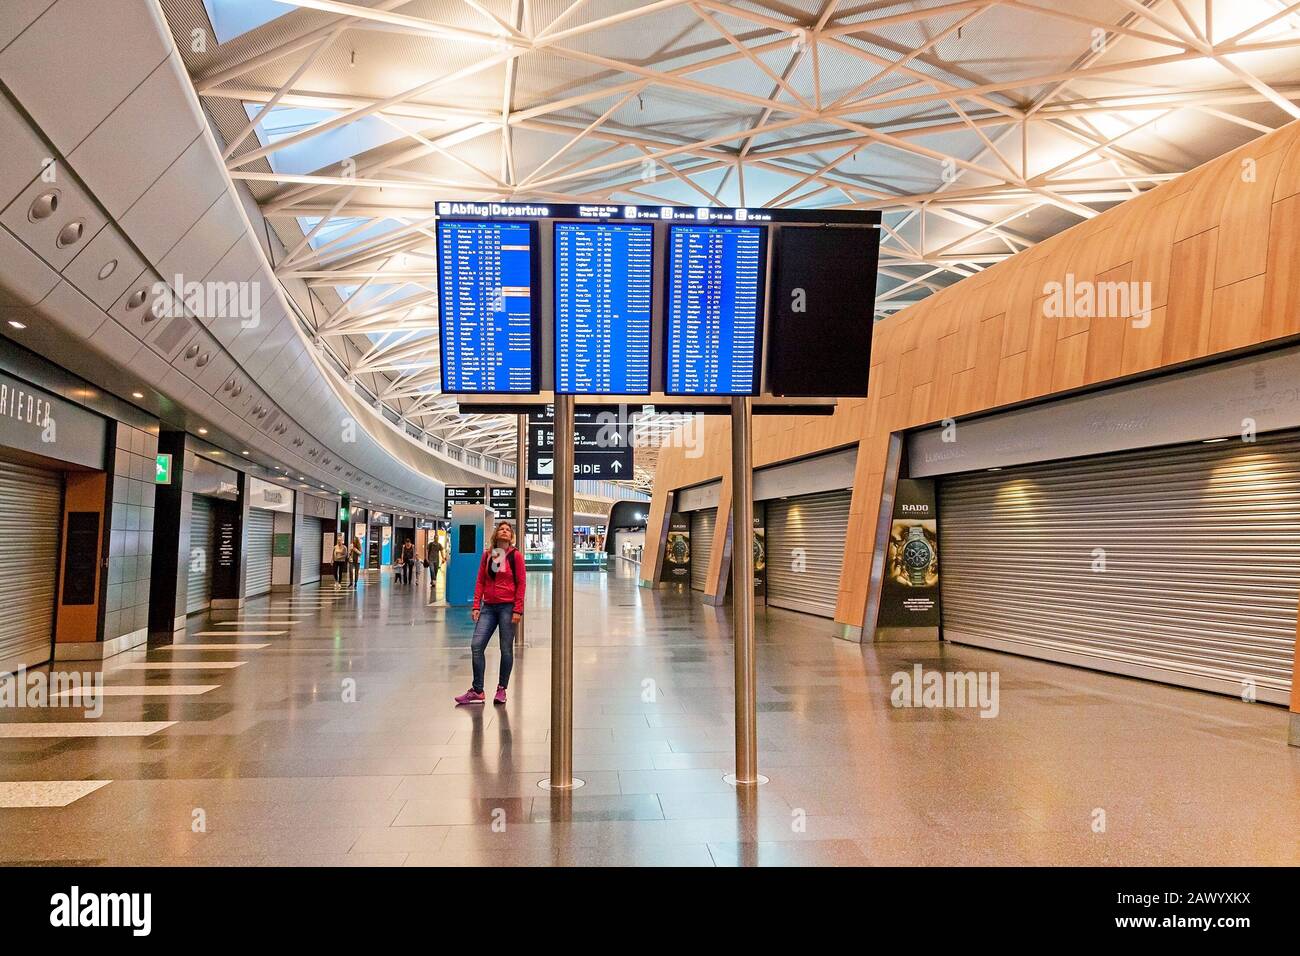 Zurich, Suisse - 11 juin 2017: Aéroport Zurich zone d'attente après l'enregistrement, femme regardant le calendrier des vols Banque D'Images